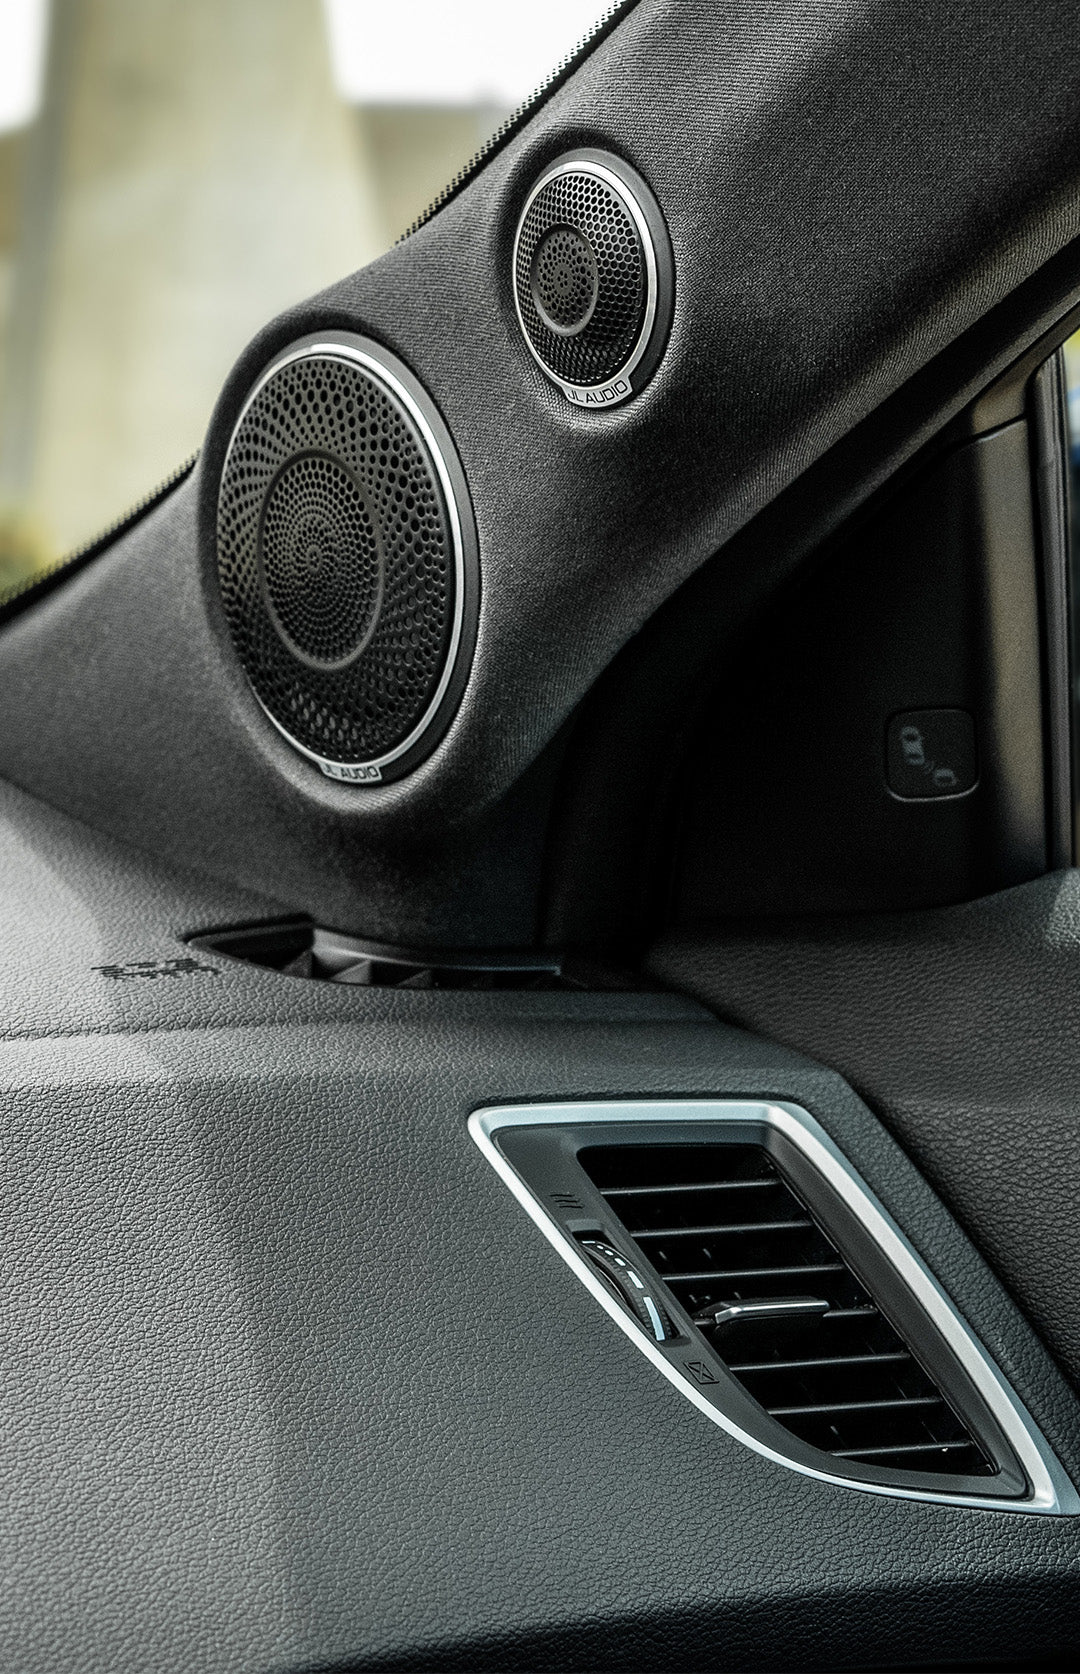 A pair of car audio speakers installed in a sedan.